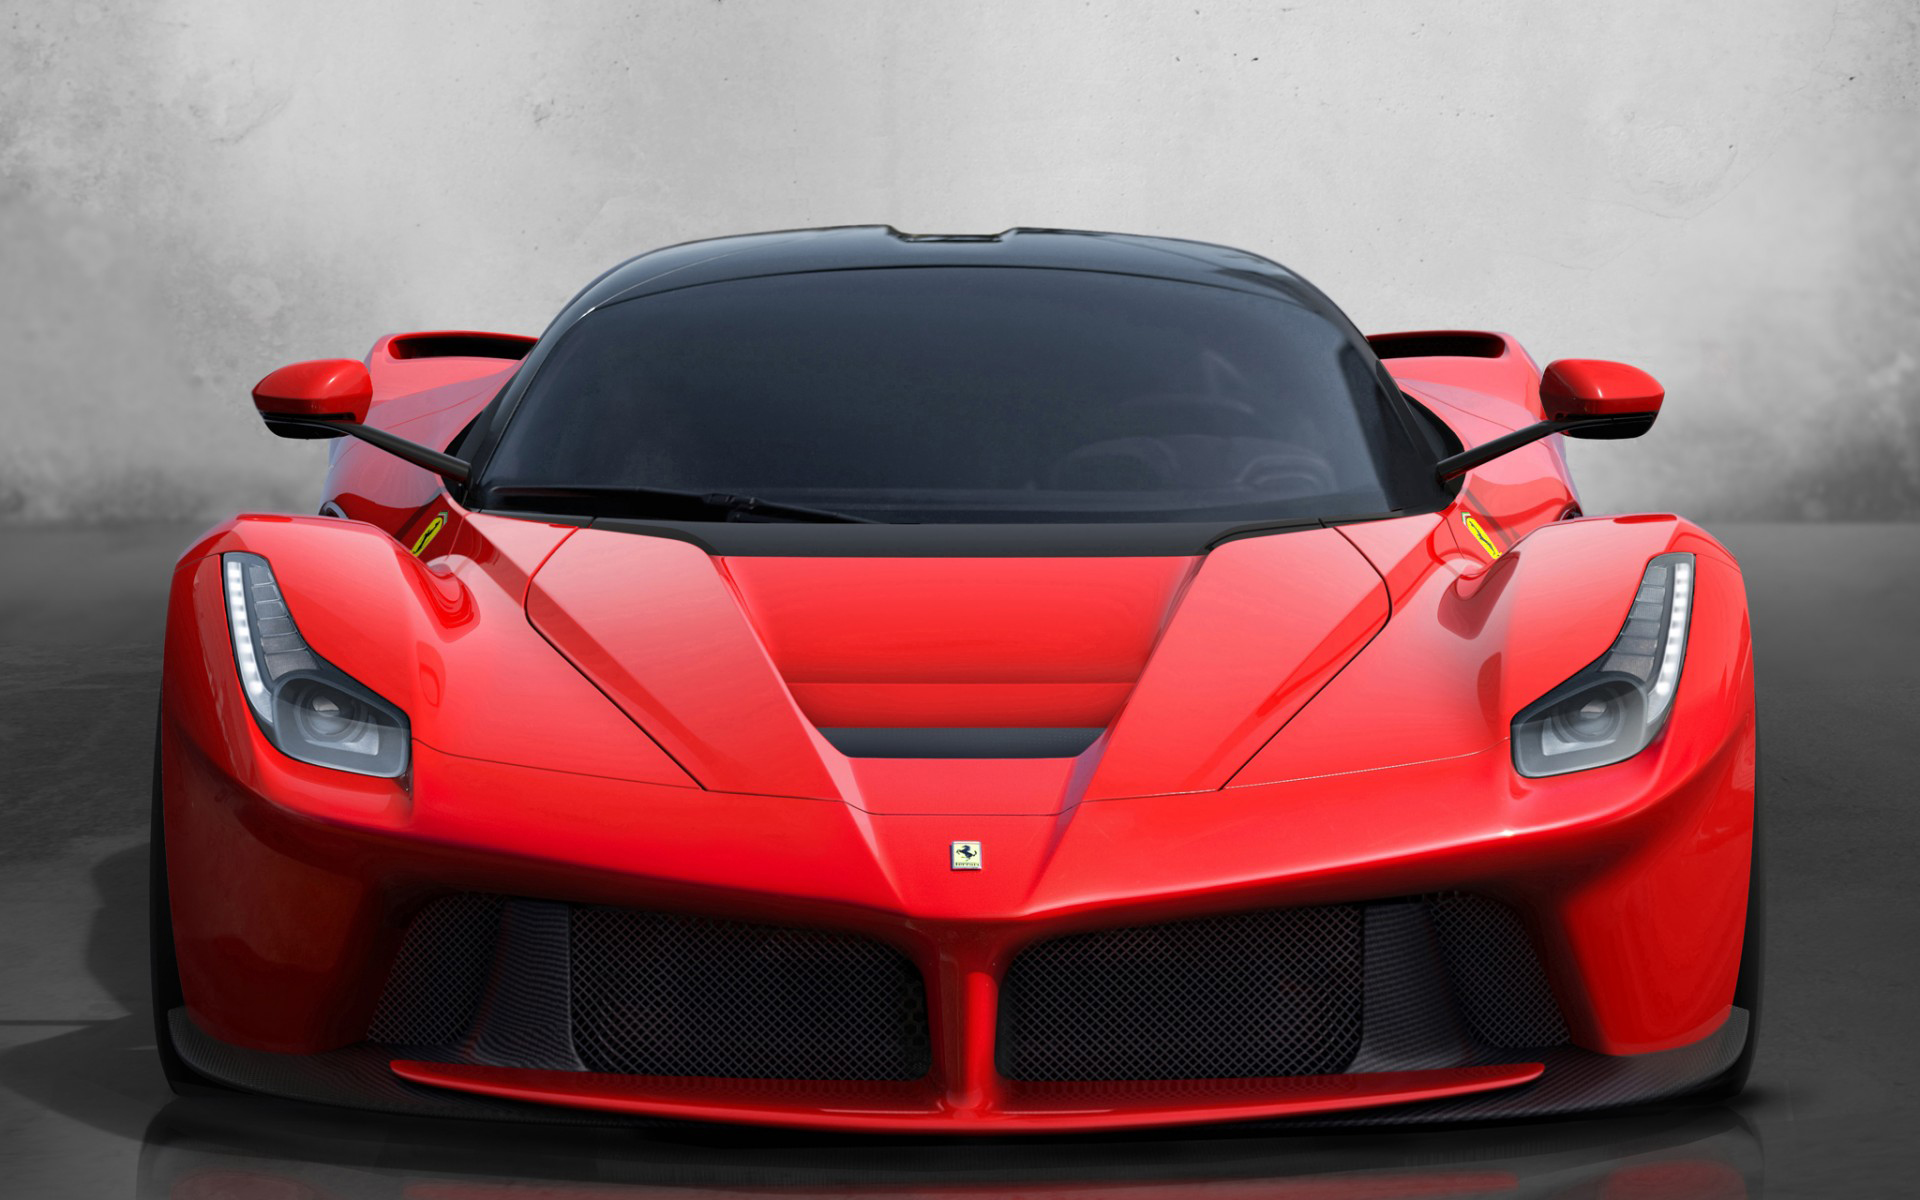 Descarga gratuita de fondo de pantalla para móvil de Ferrari Ginebra, Ferrari, Vehículos.